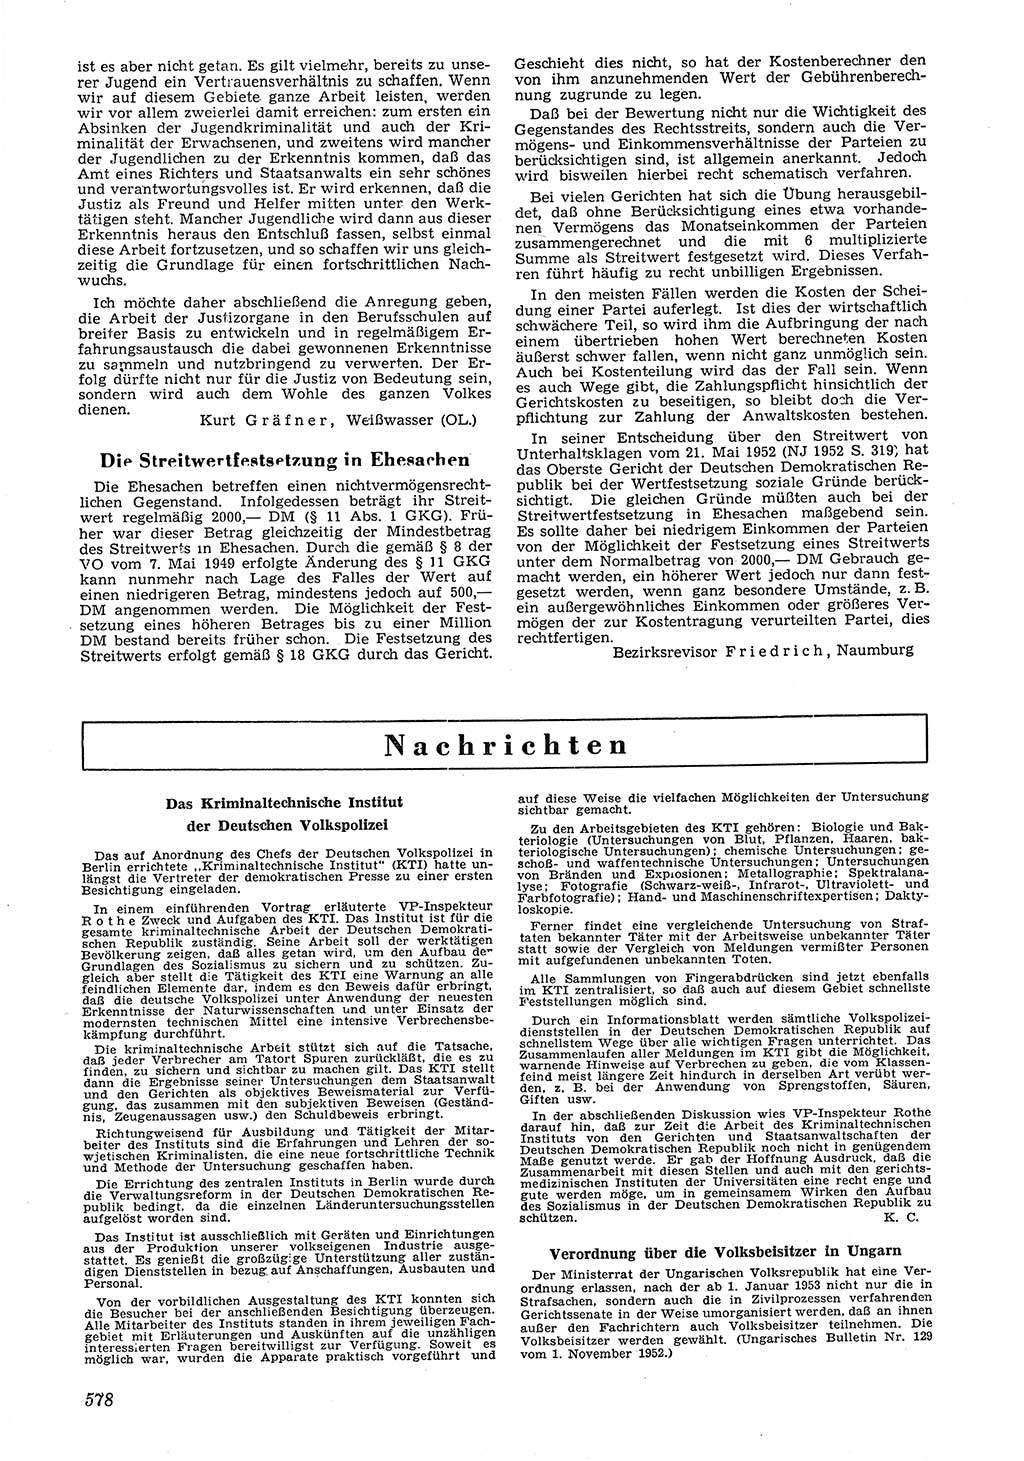 Neue Justiz (NJ), Zeitschrift für Recht und Rechtswissenschaft [Deutsche Demokratische Republik (DDR)], 6. Jahrgang 1952, Seite 578 (NJ DDR 1952, S. 578)